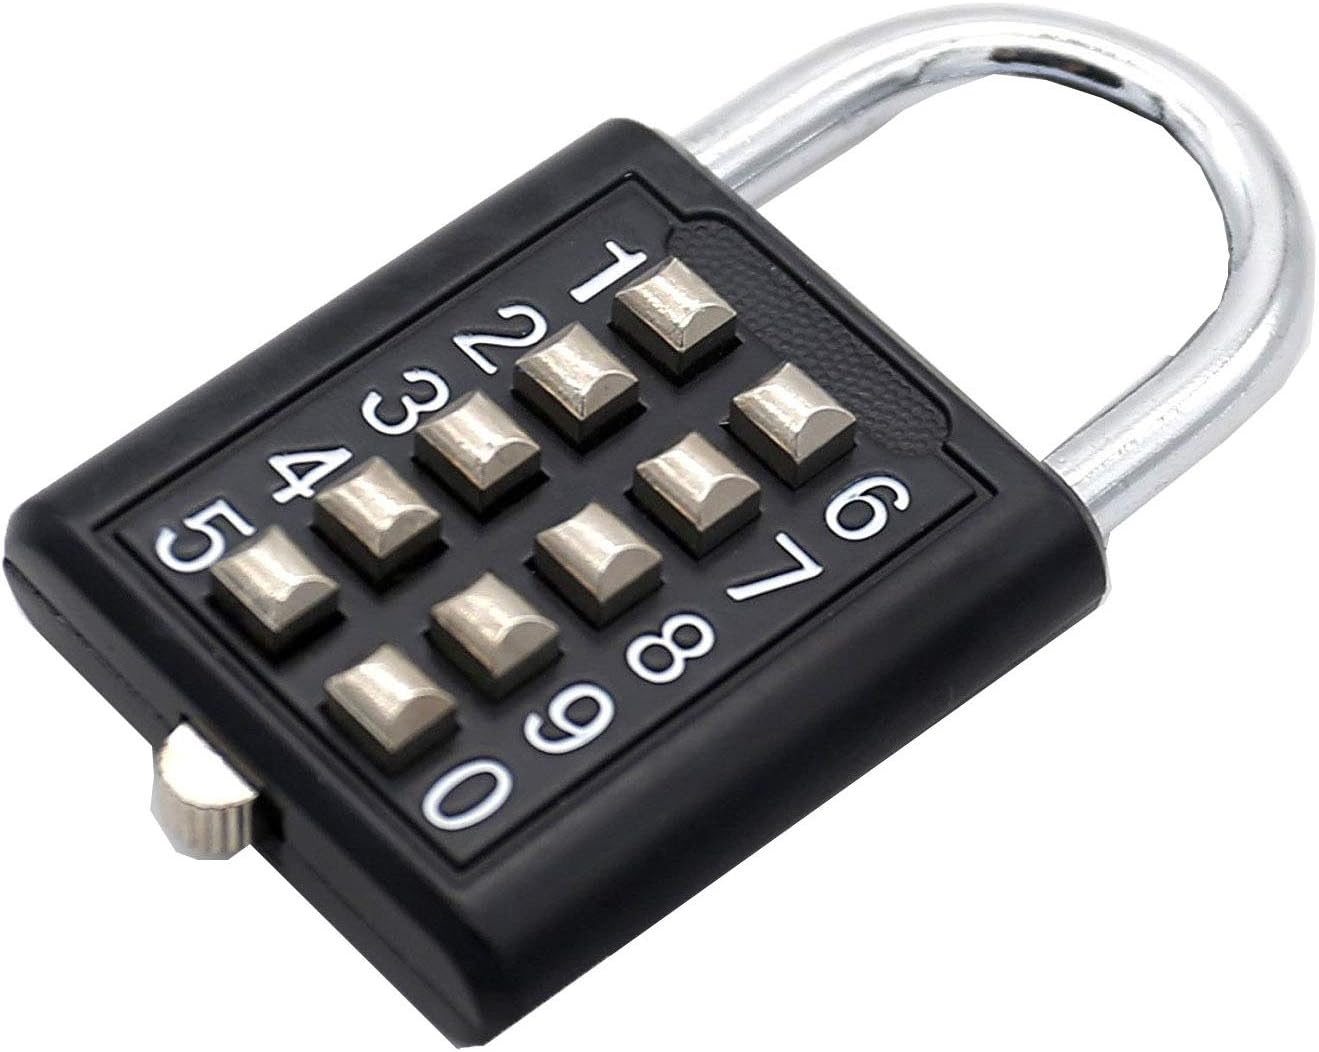 Padlock - Lock tactile button combination padlock 10 [...]